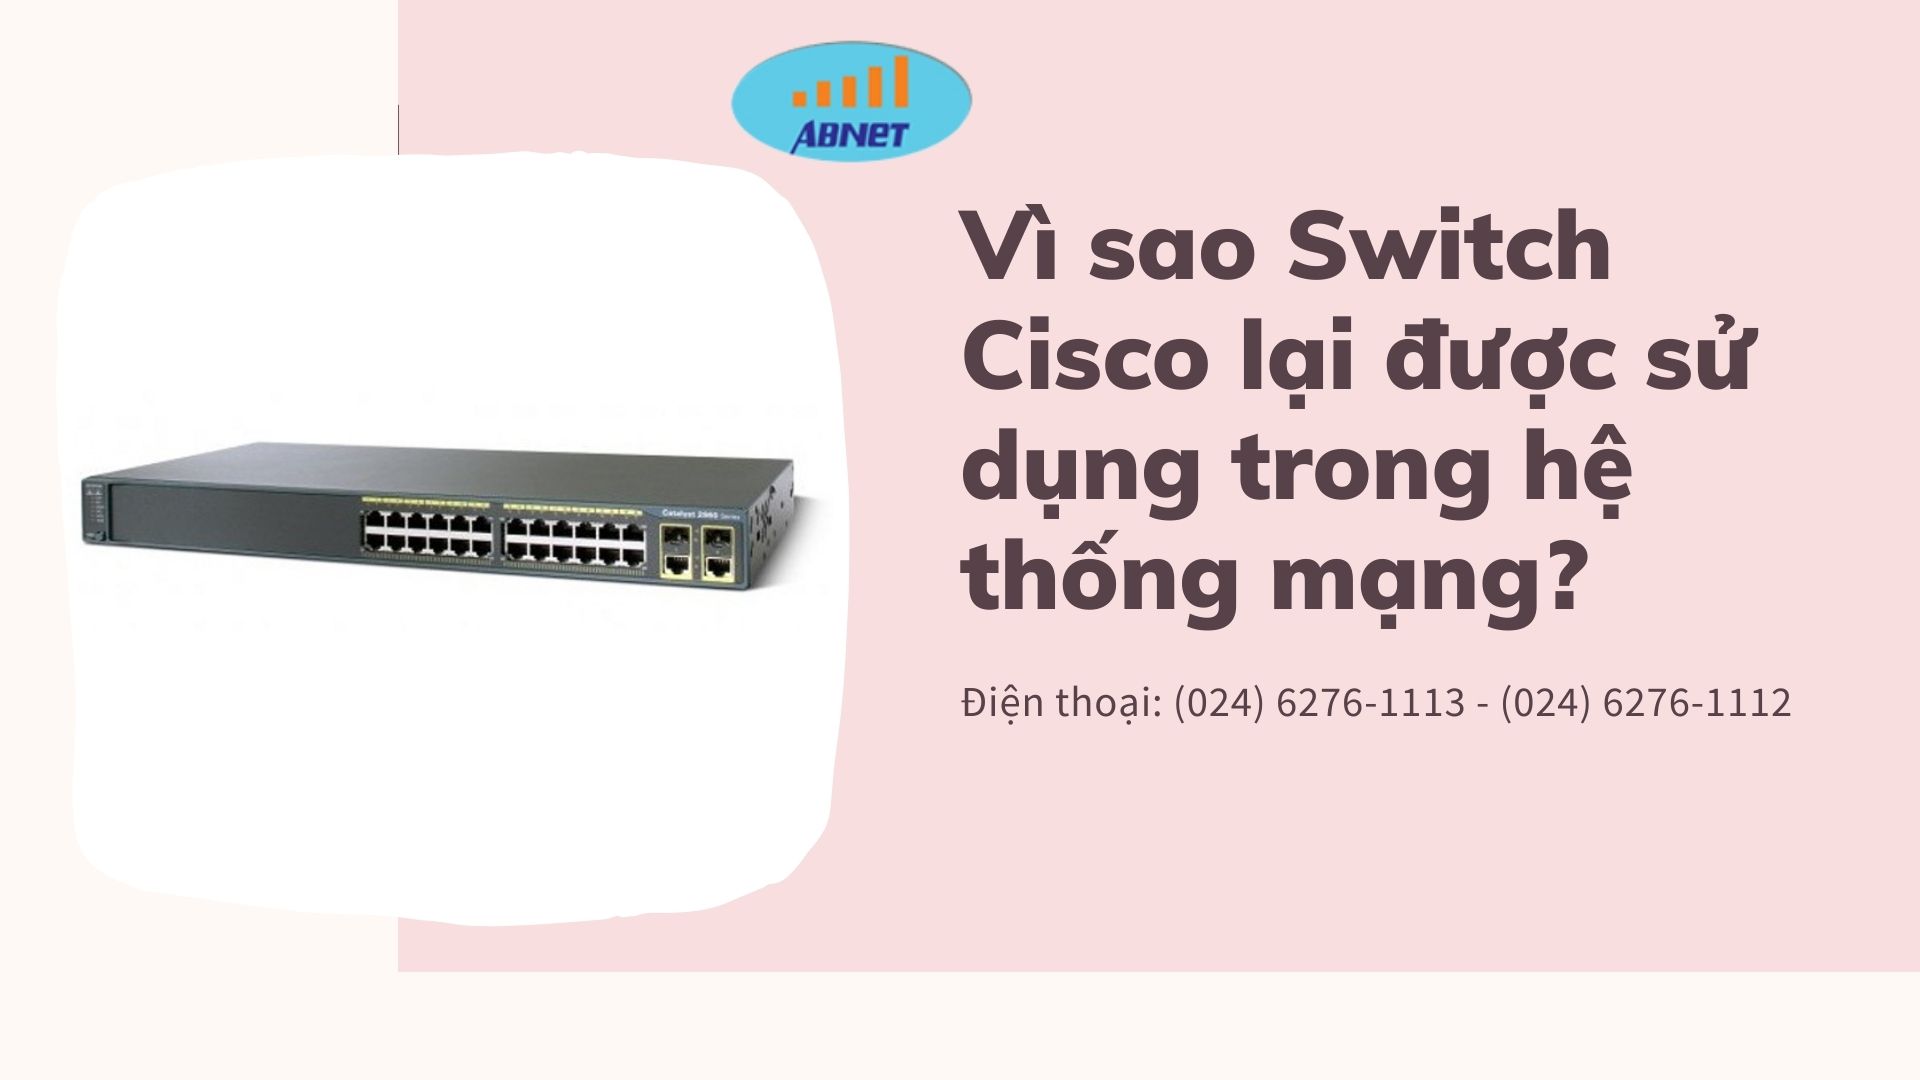 Vì sao Switch Cisco lại được sử dụng trong hệ thống mạng